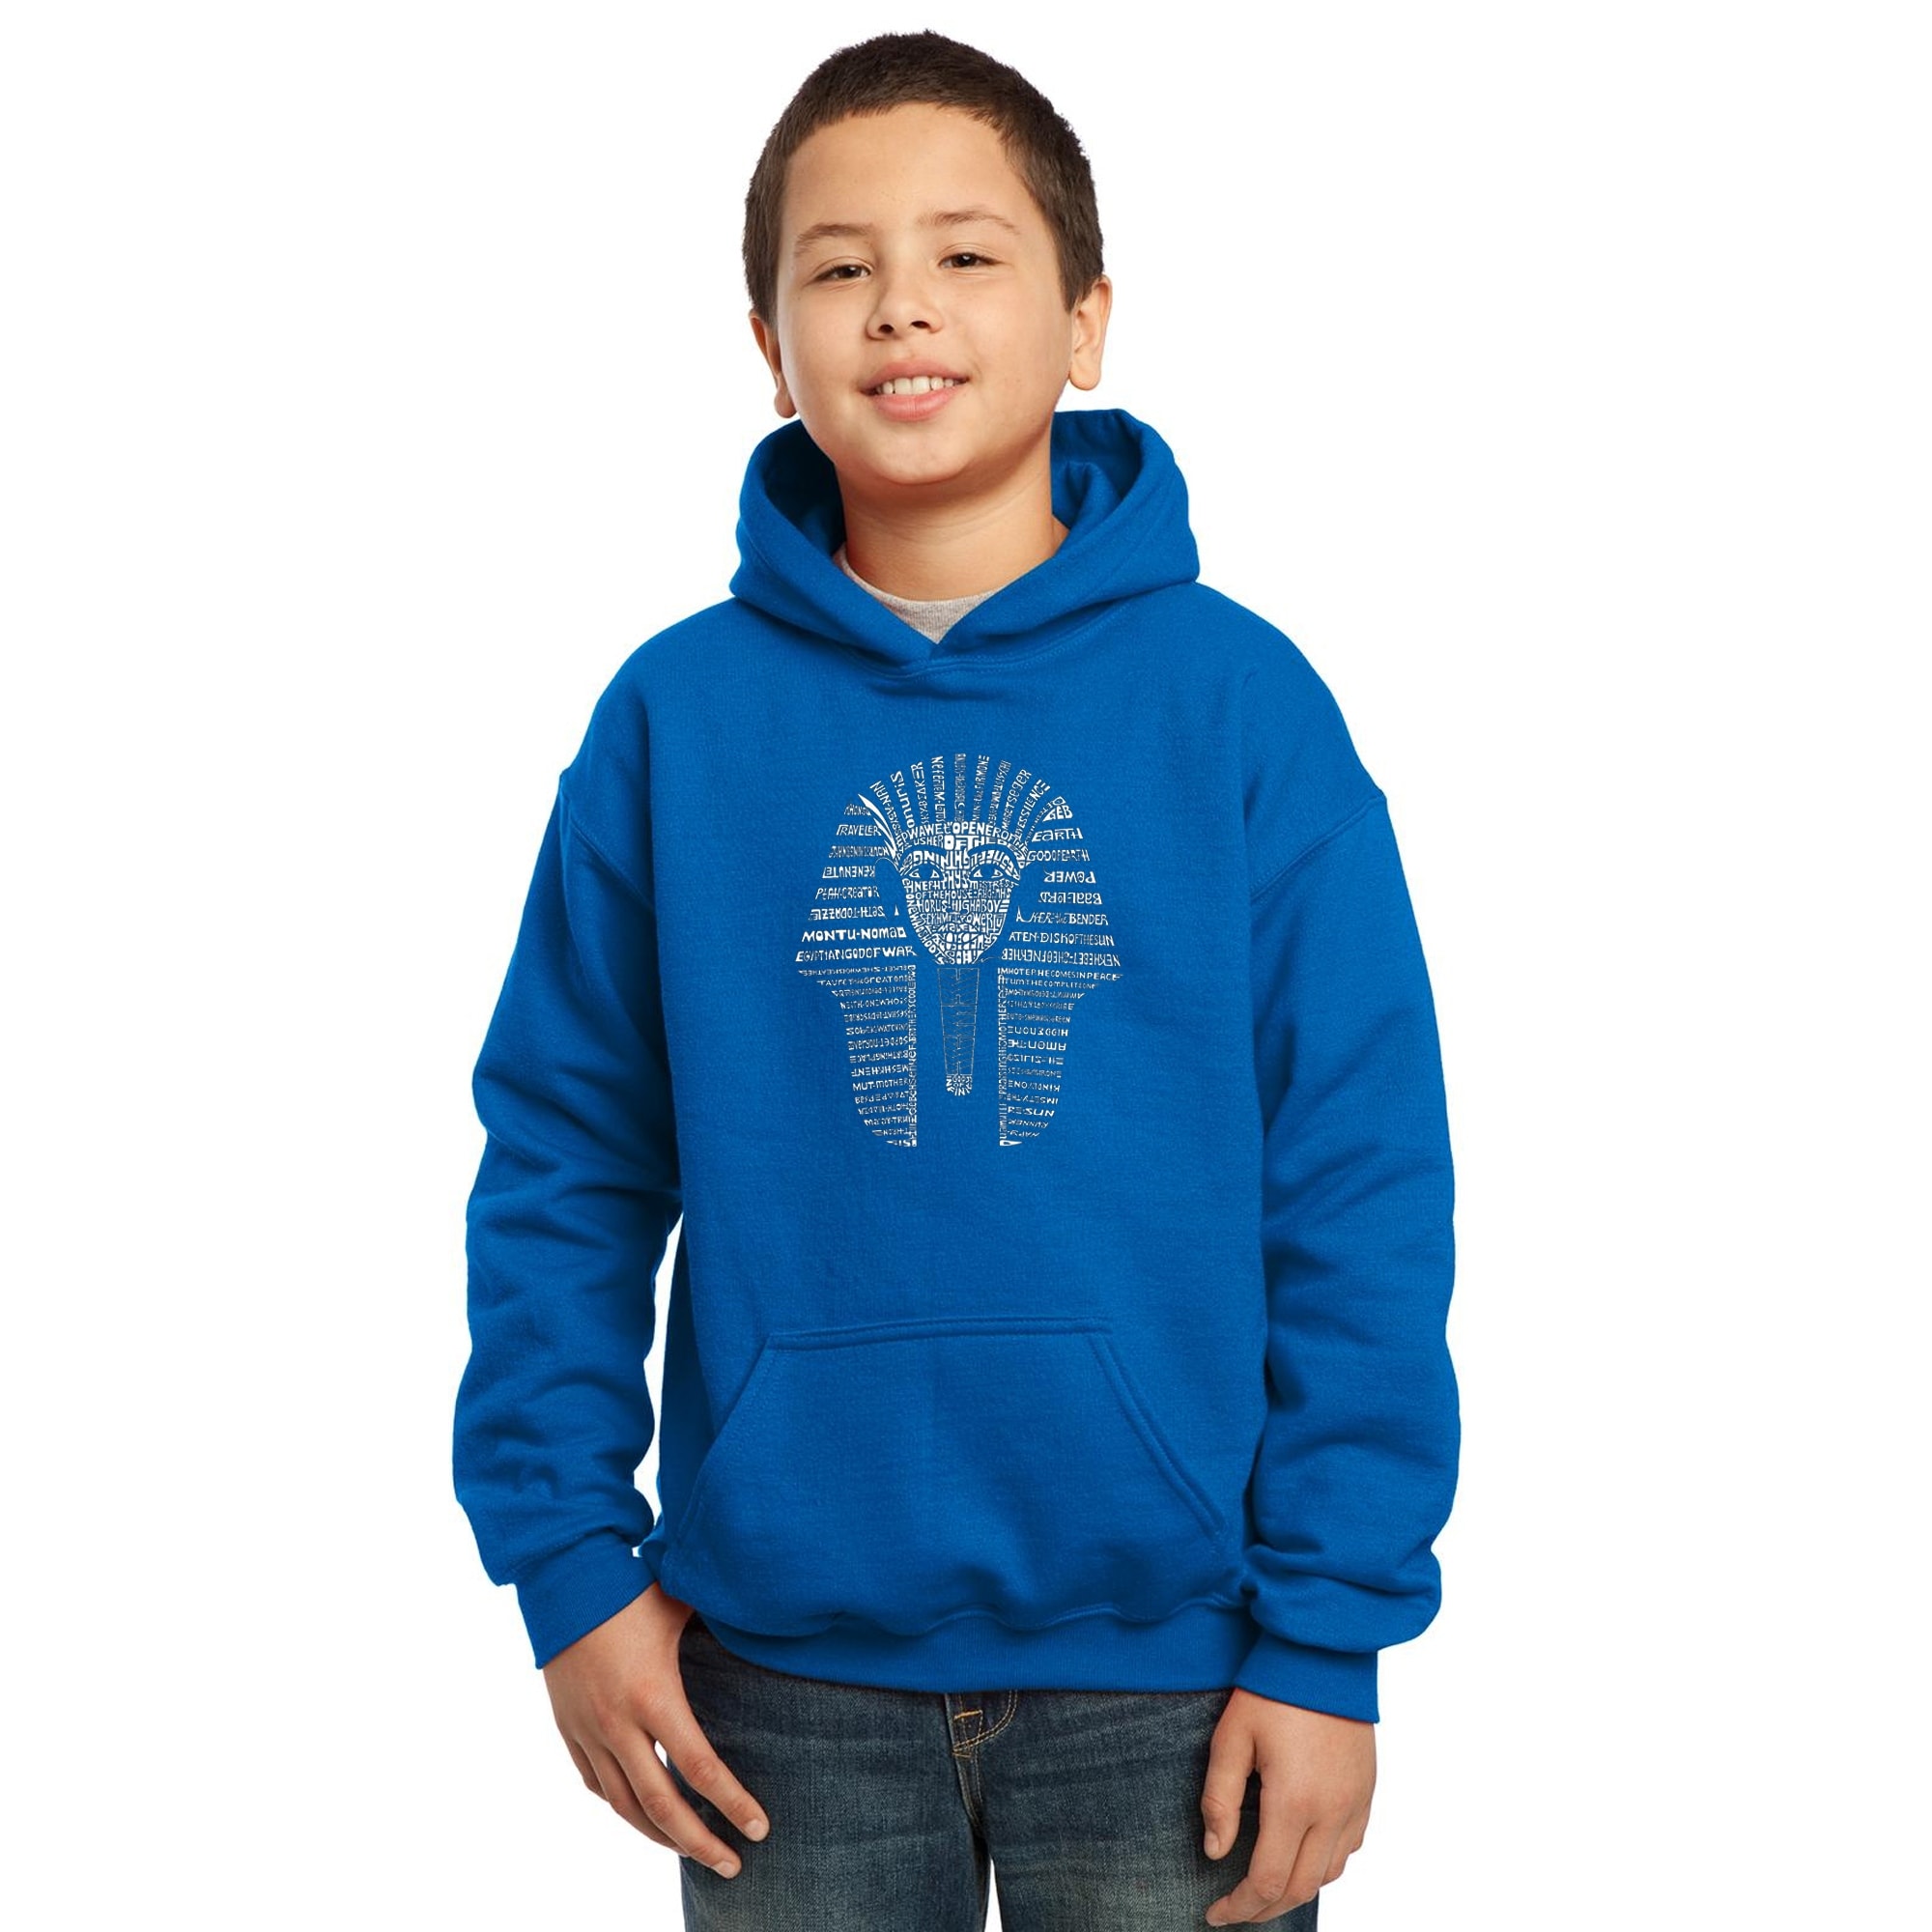 LA Pop Art Boy's Word Art Hooded Sweatshirt - KING TUT - Royal, S